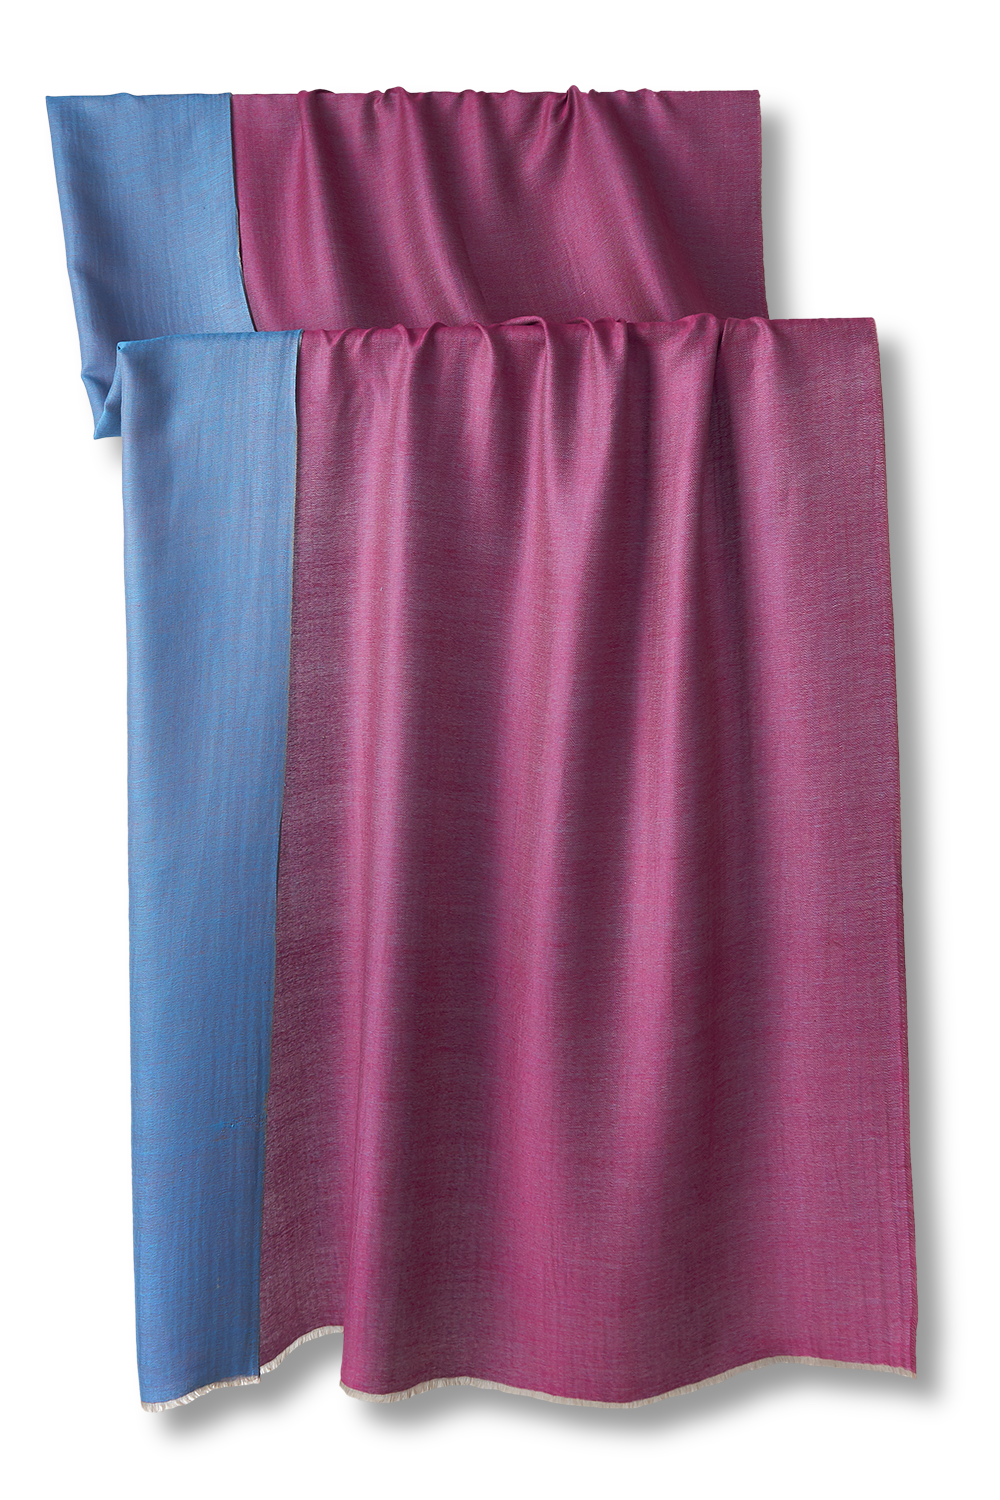 pashmina de puro cashmere verdadeiro dupla face azul e rosa 100x200cm para inverno, festas, casamentos e frio